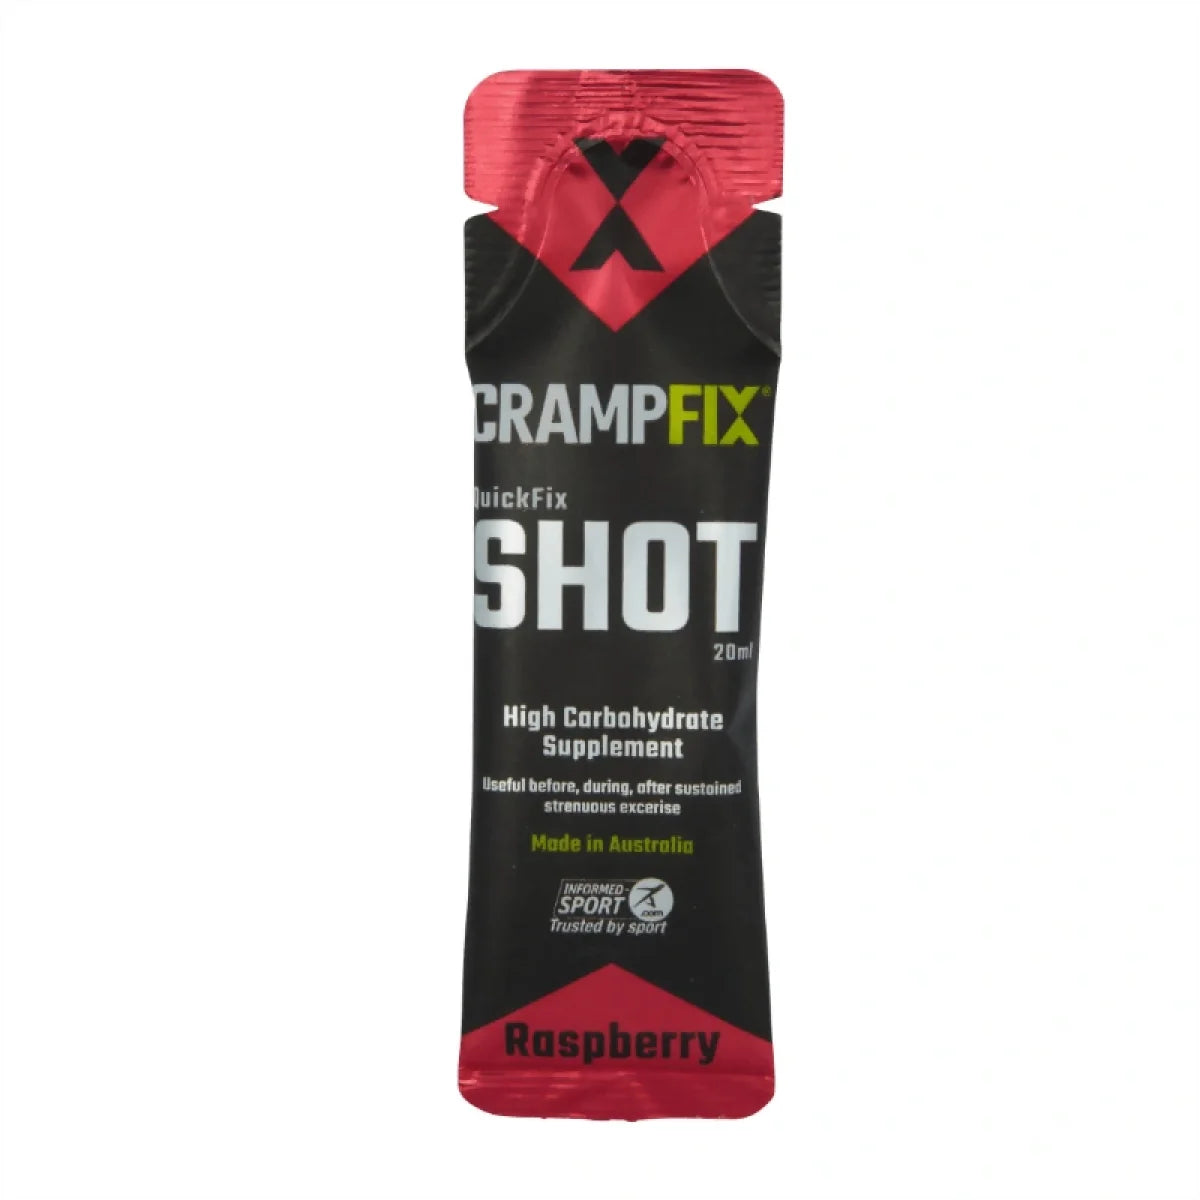 CrampFix QuickFix Shot High Carbohydrate Supplement